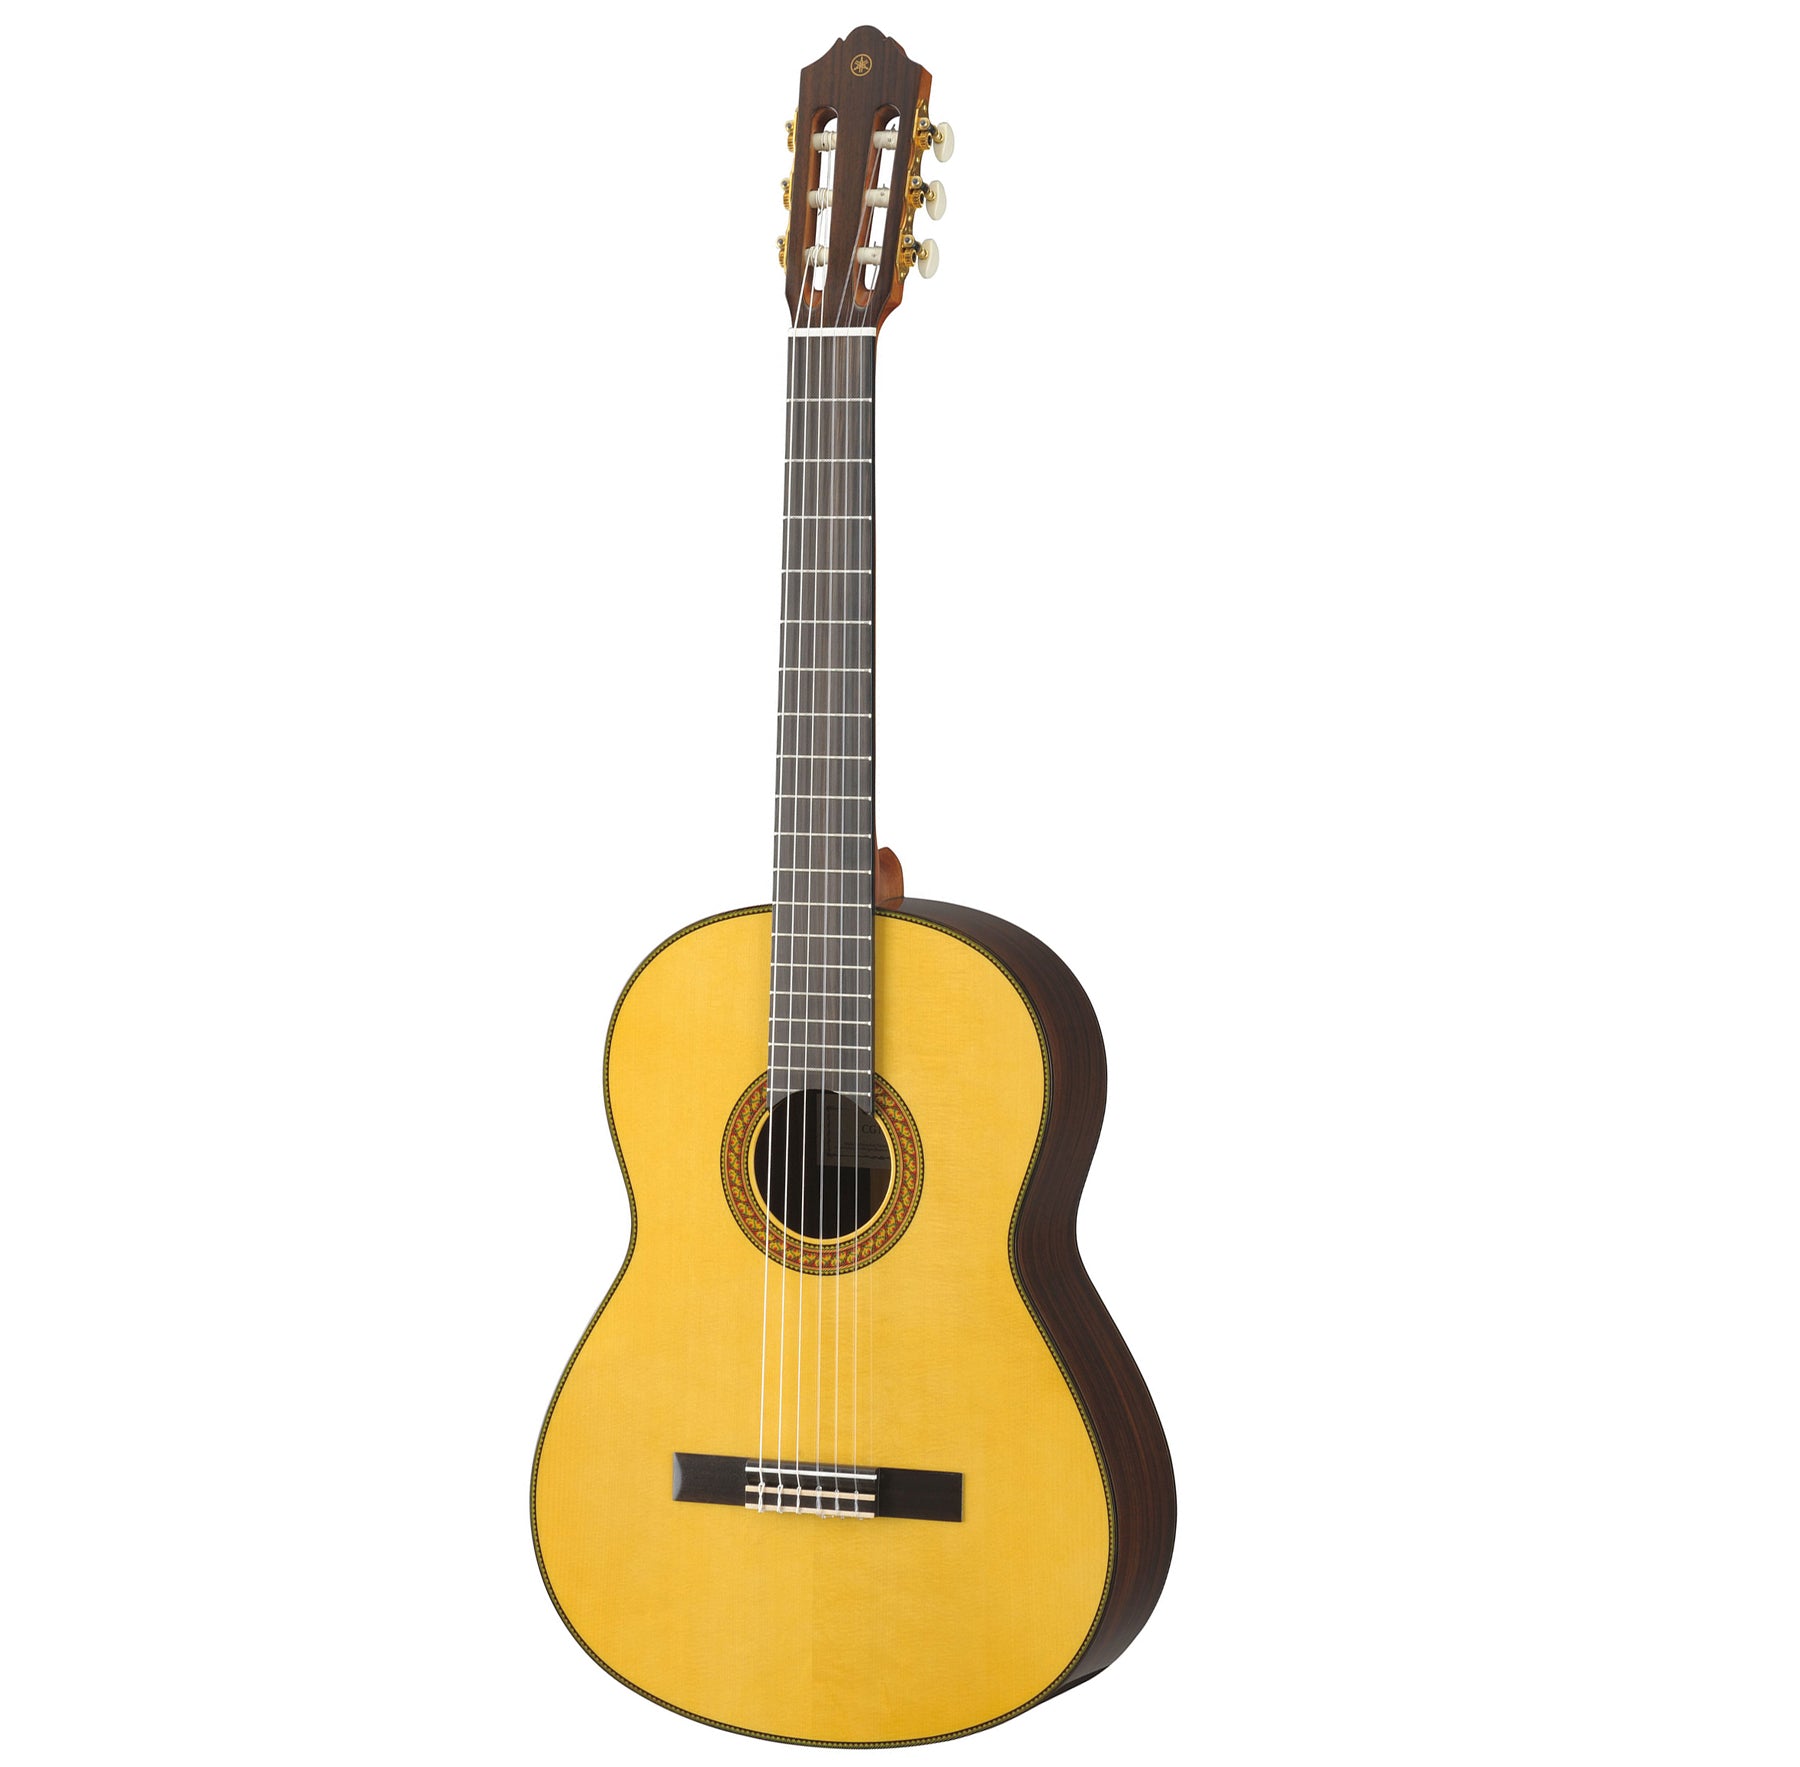 Yamaha CG192S Spruce Top Classical Guitar, Natural